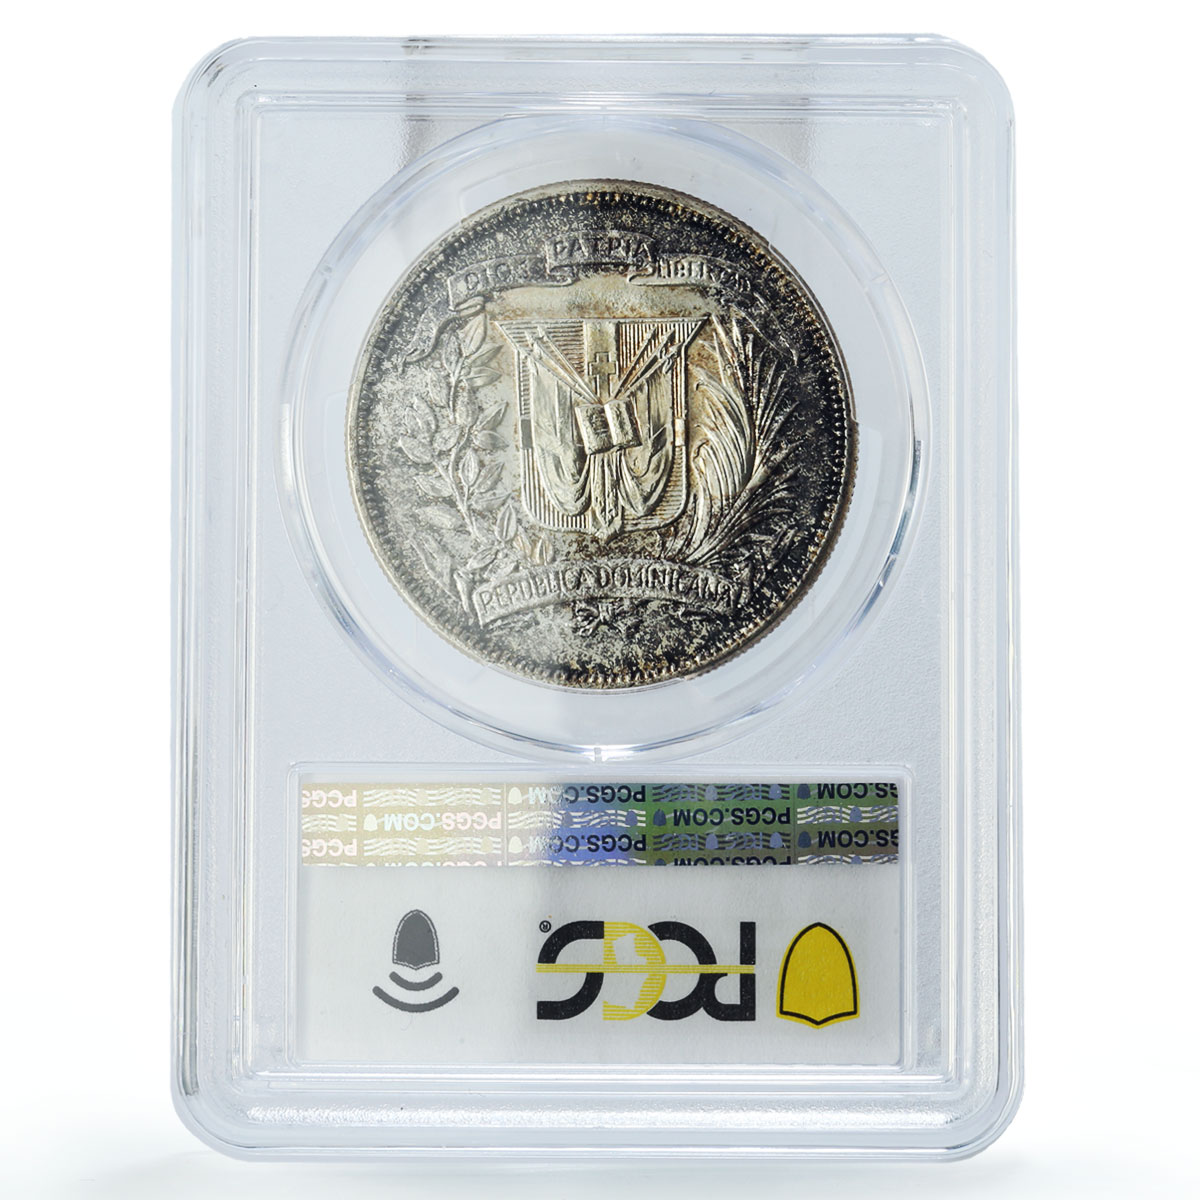 Dominican Republic 1 peso Trujillo Era Regime Coinage MS63 PCGS silver coin 1955